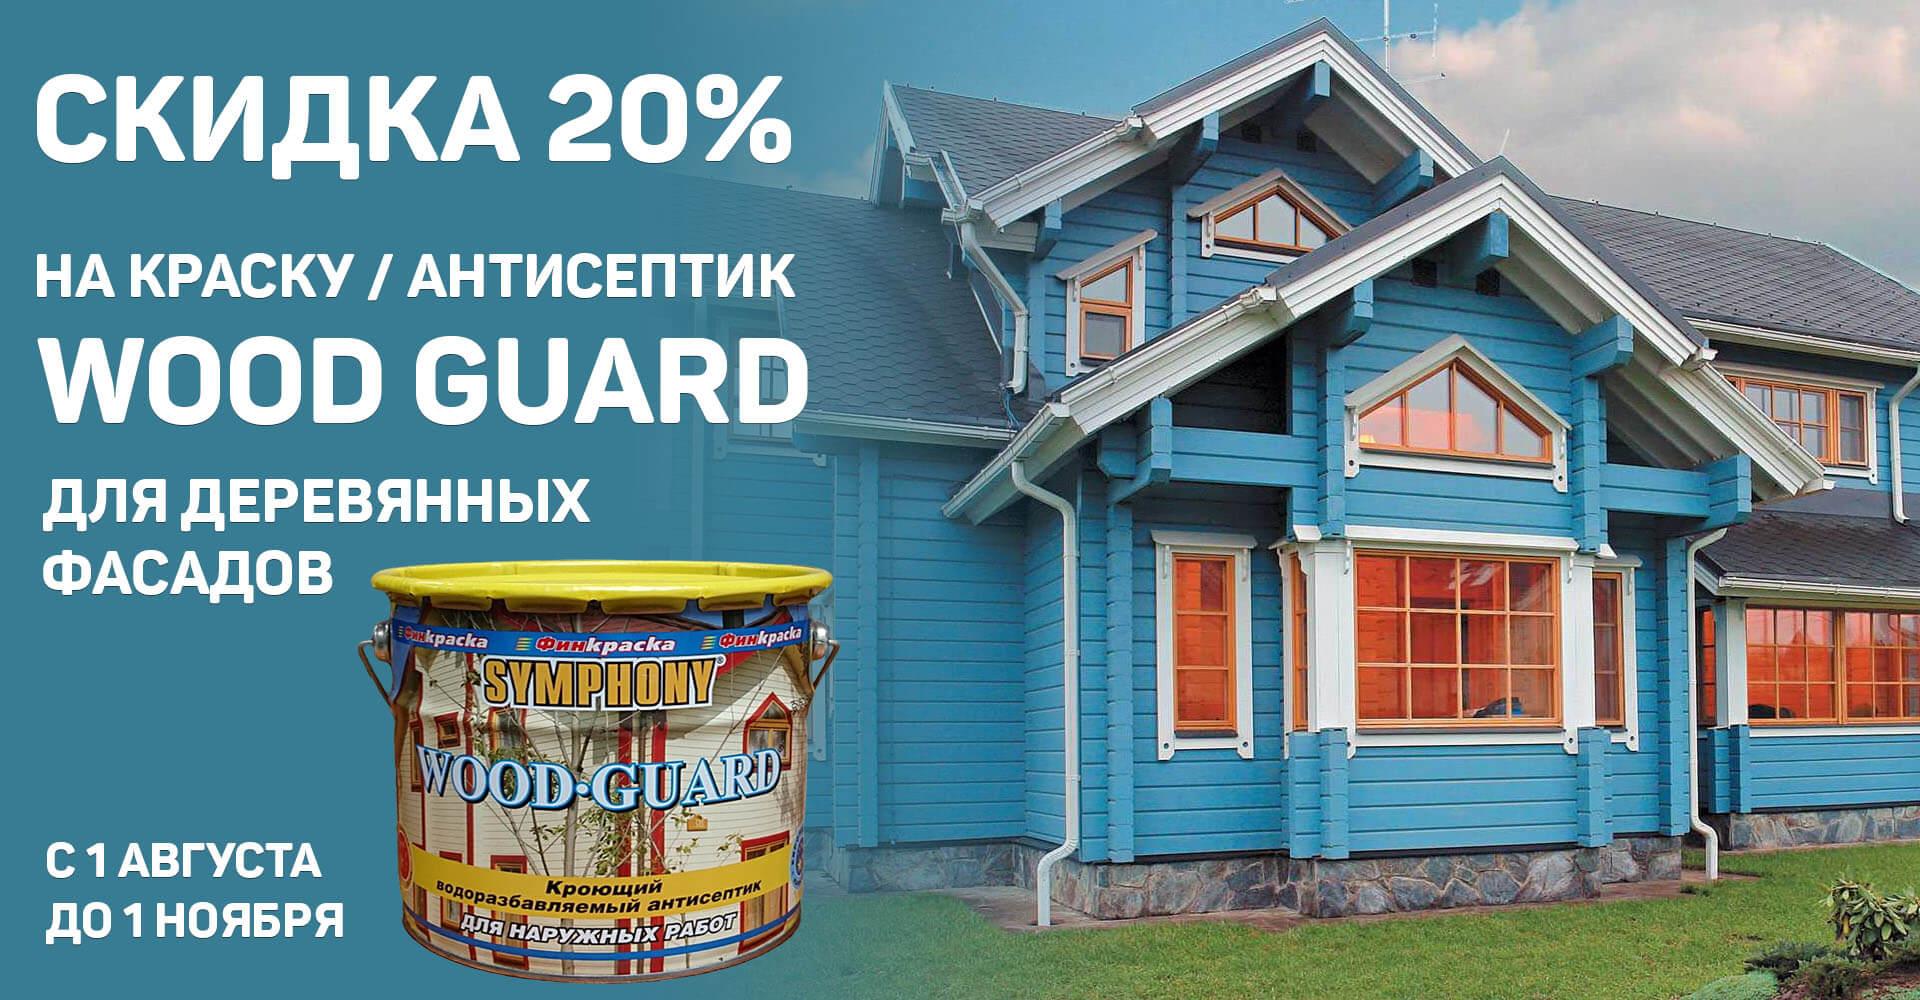 Скидка 20% на краску / антисептик Wood Guard для деревянных фасадов